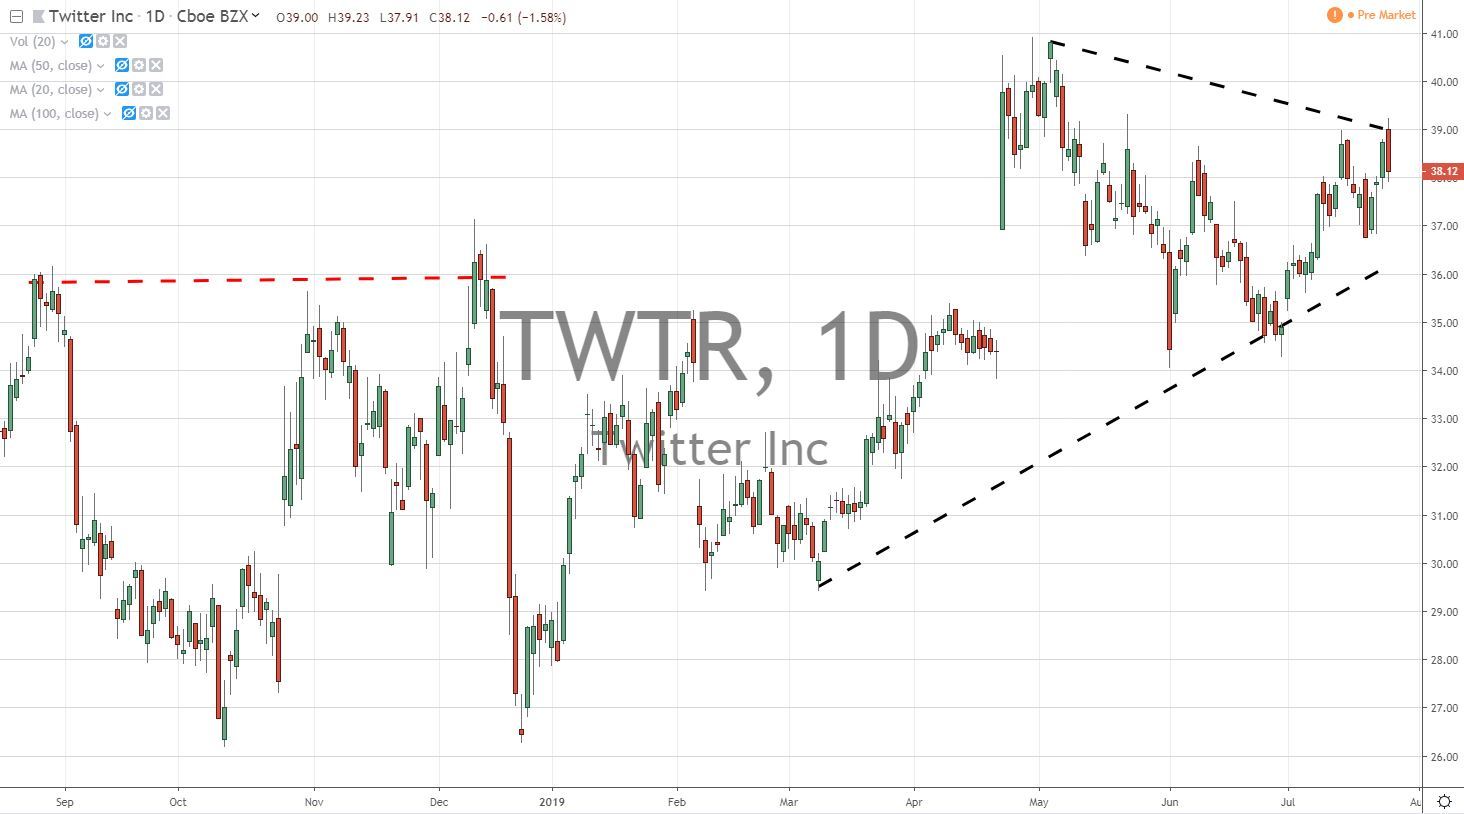 Twitter Inc TWTR Stock Chart 7.26.19 Before Earnings